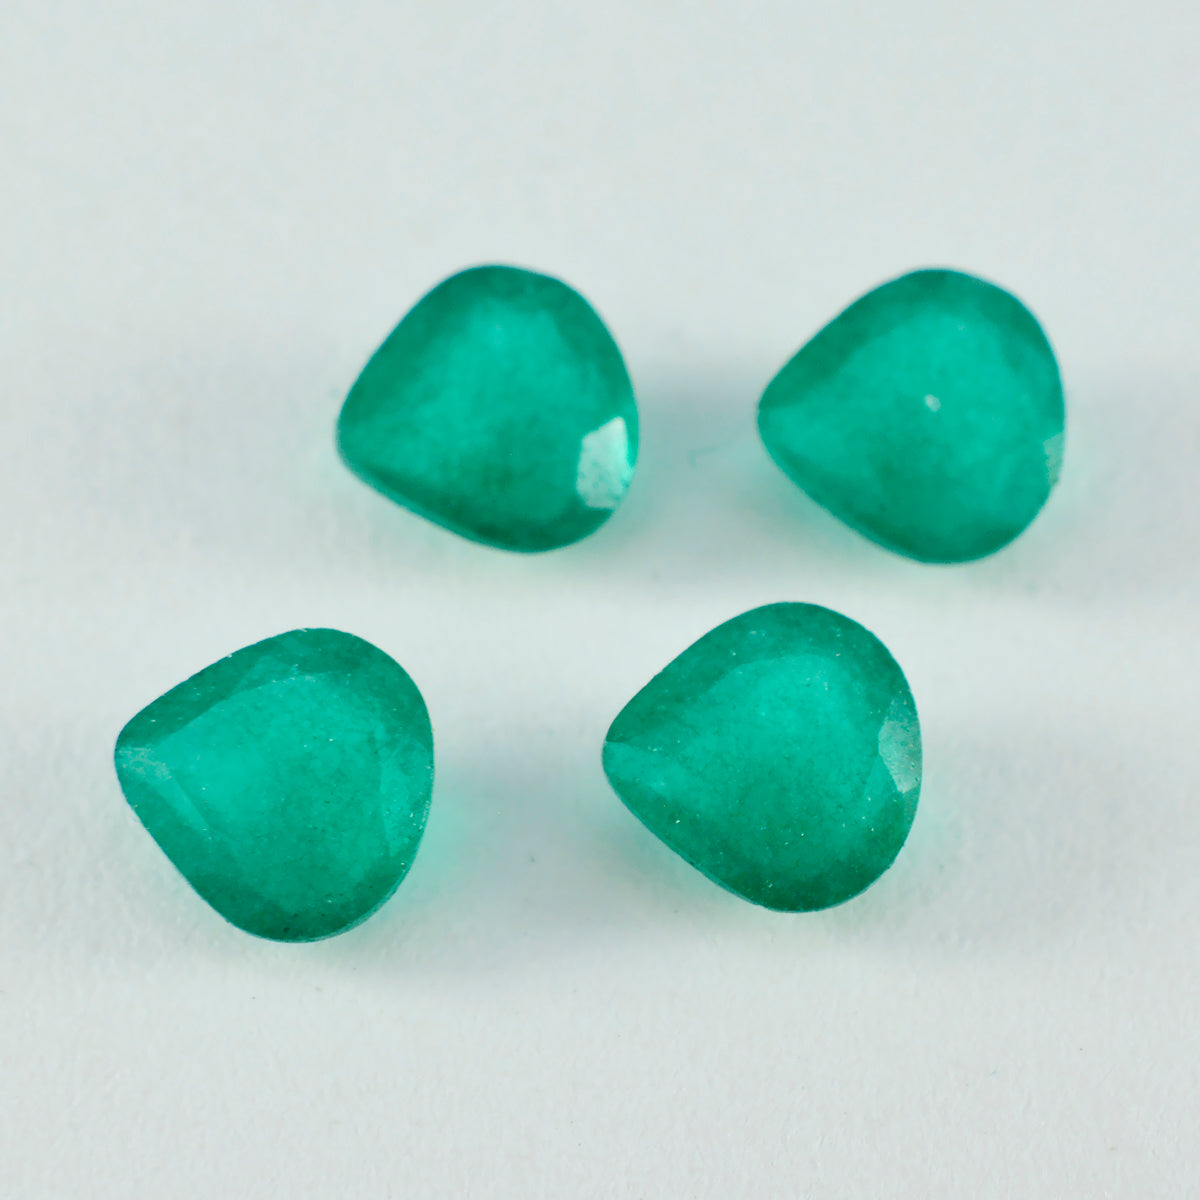 Riyogems 1 Stück echter grüner Jaspis, facettiert, 14 x 14 mm, Herzform, Edelstein von guter Qualität